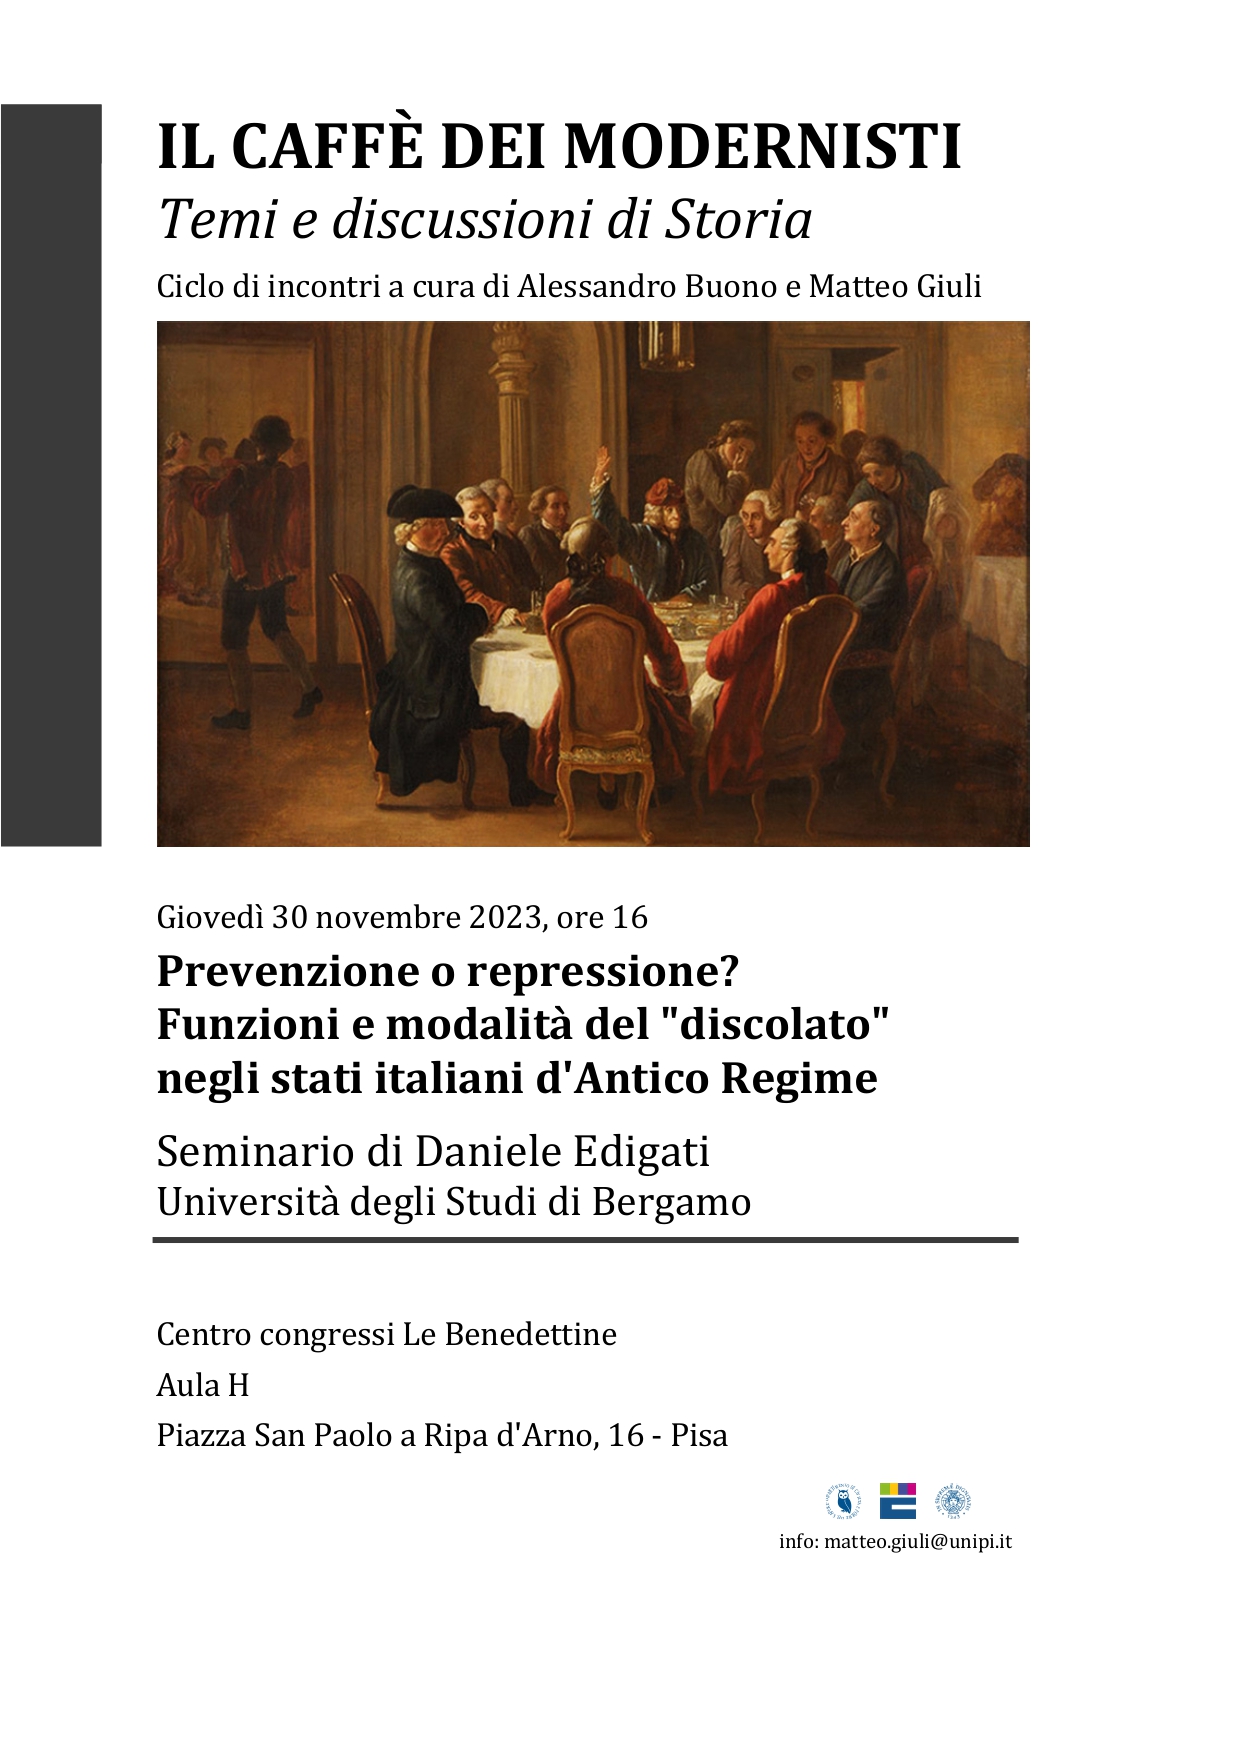 PIANO DEGLI STUDI - Seminario di Bergamo